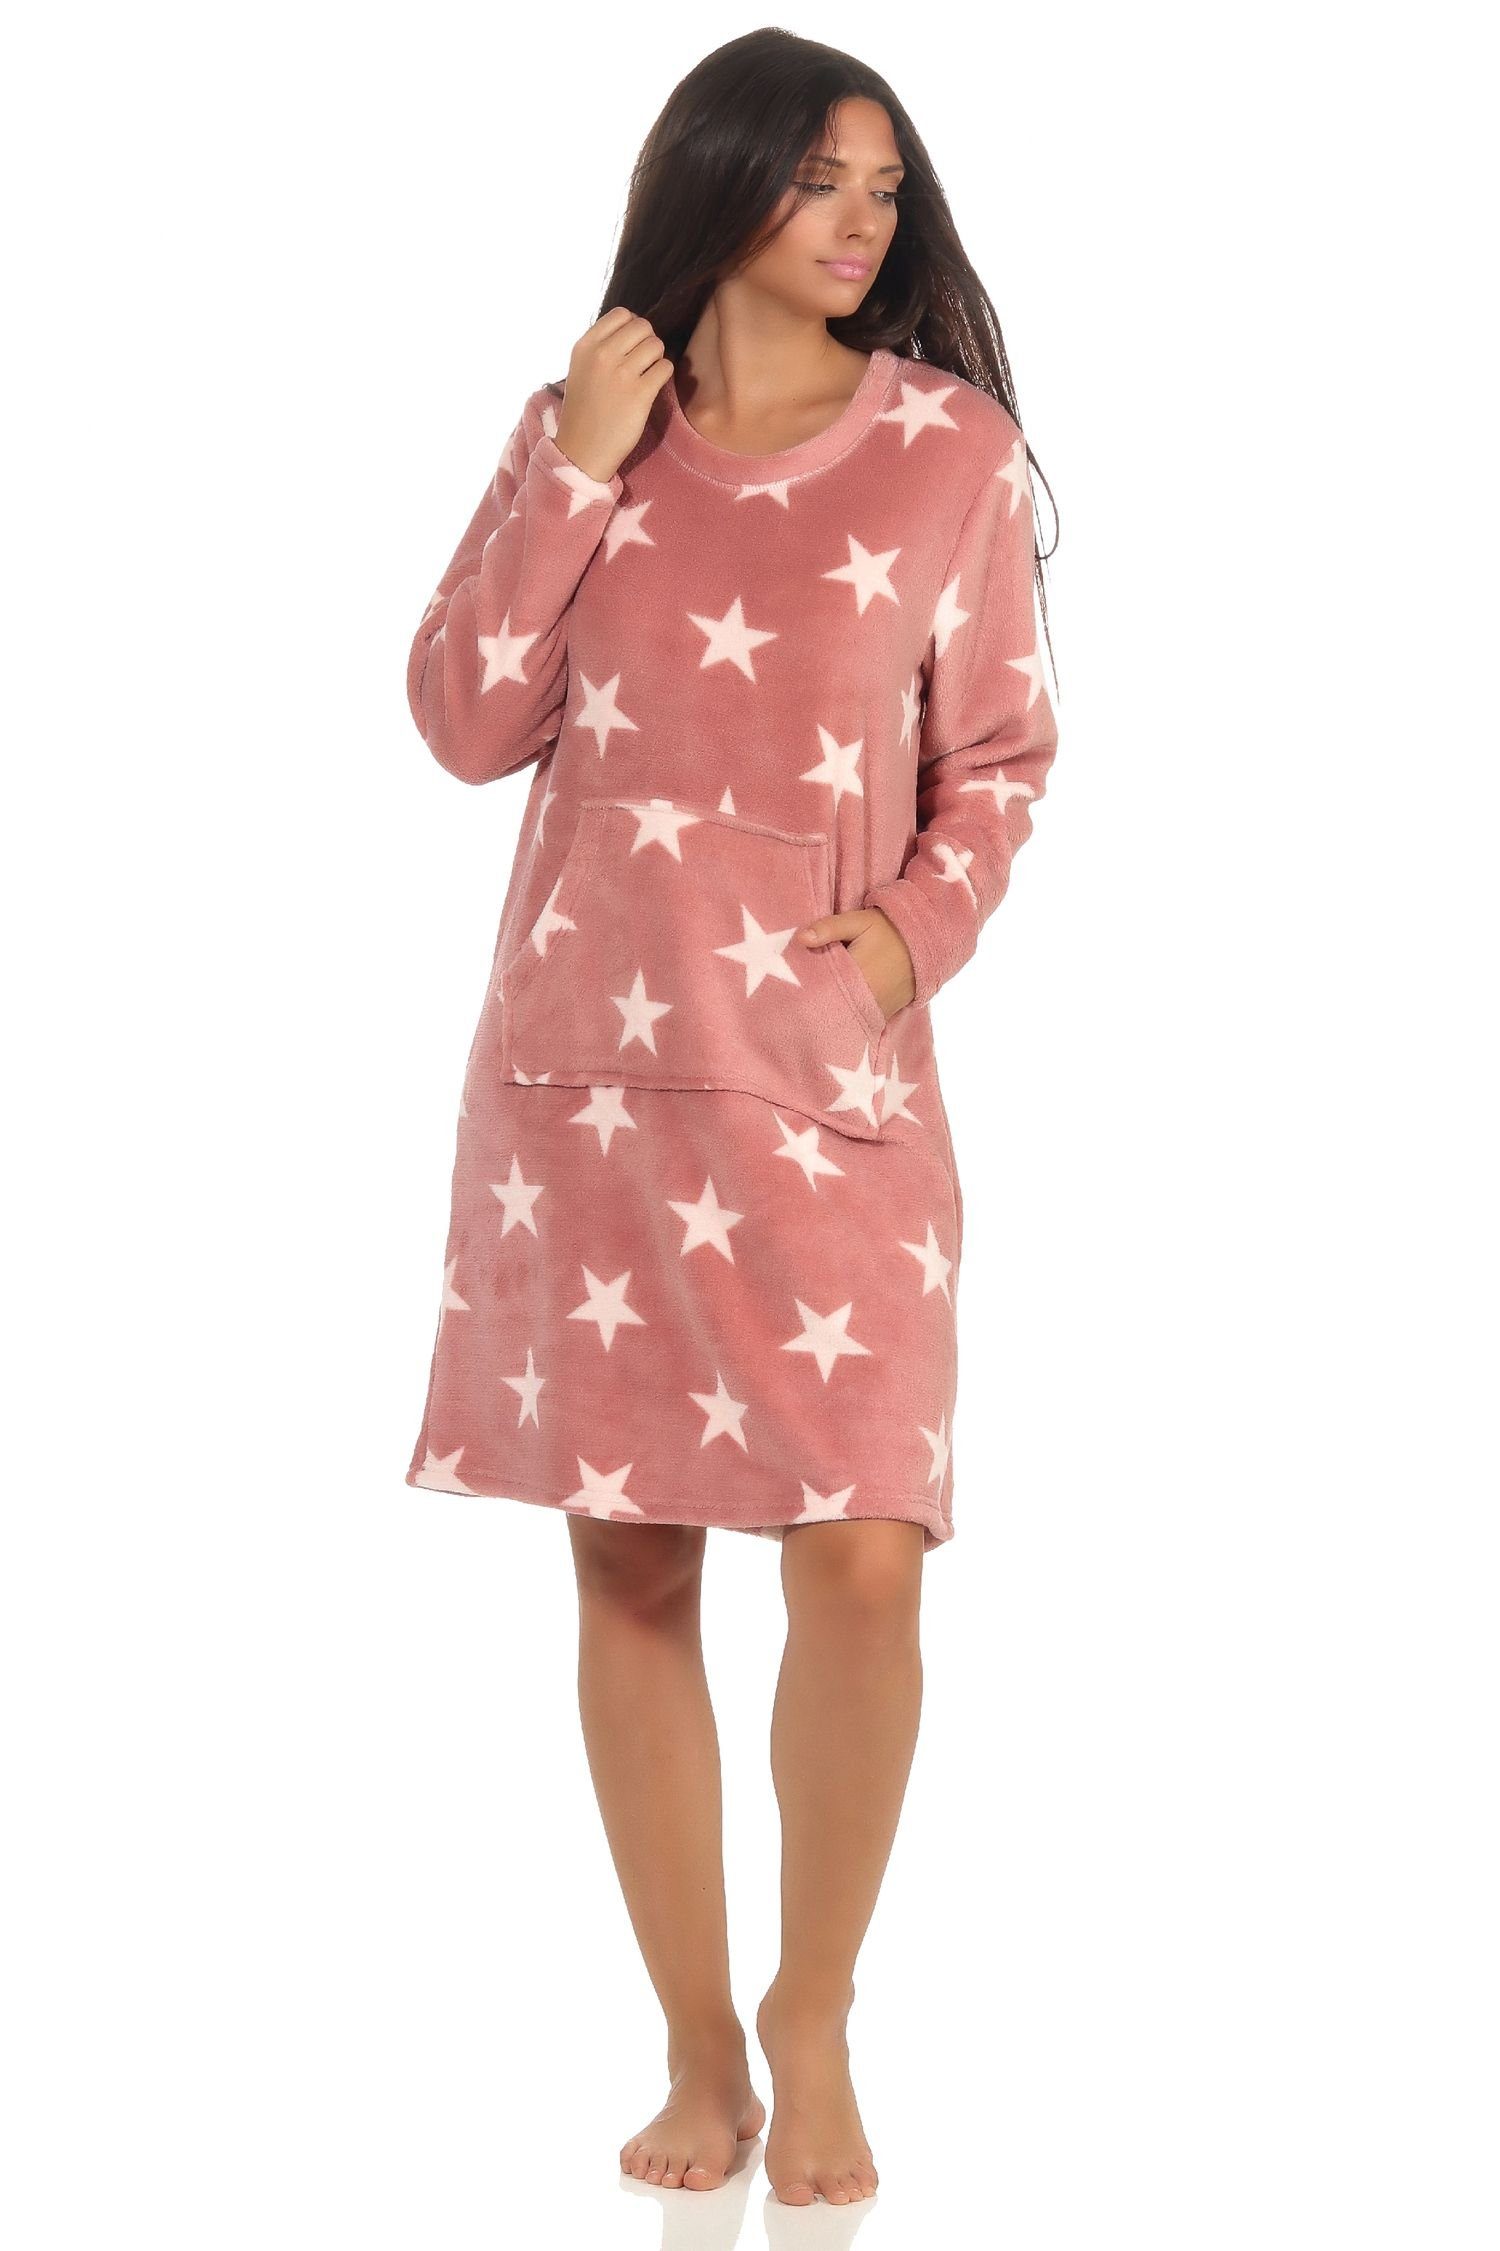 Normann Nachthemd Damen Nachthemd Hauskleid in Sterne Optik aus kuschel Coral Fleece rosa